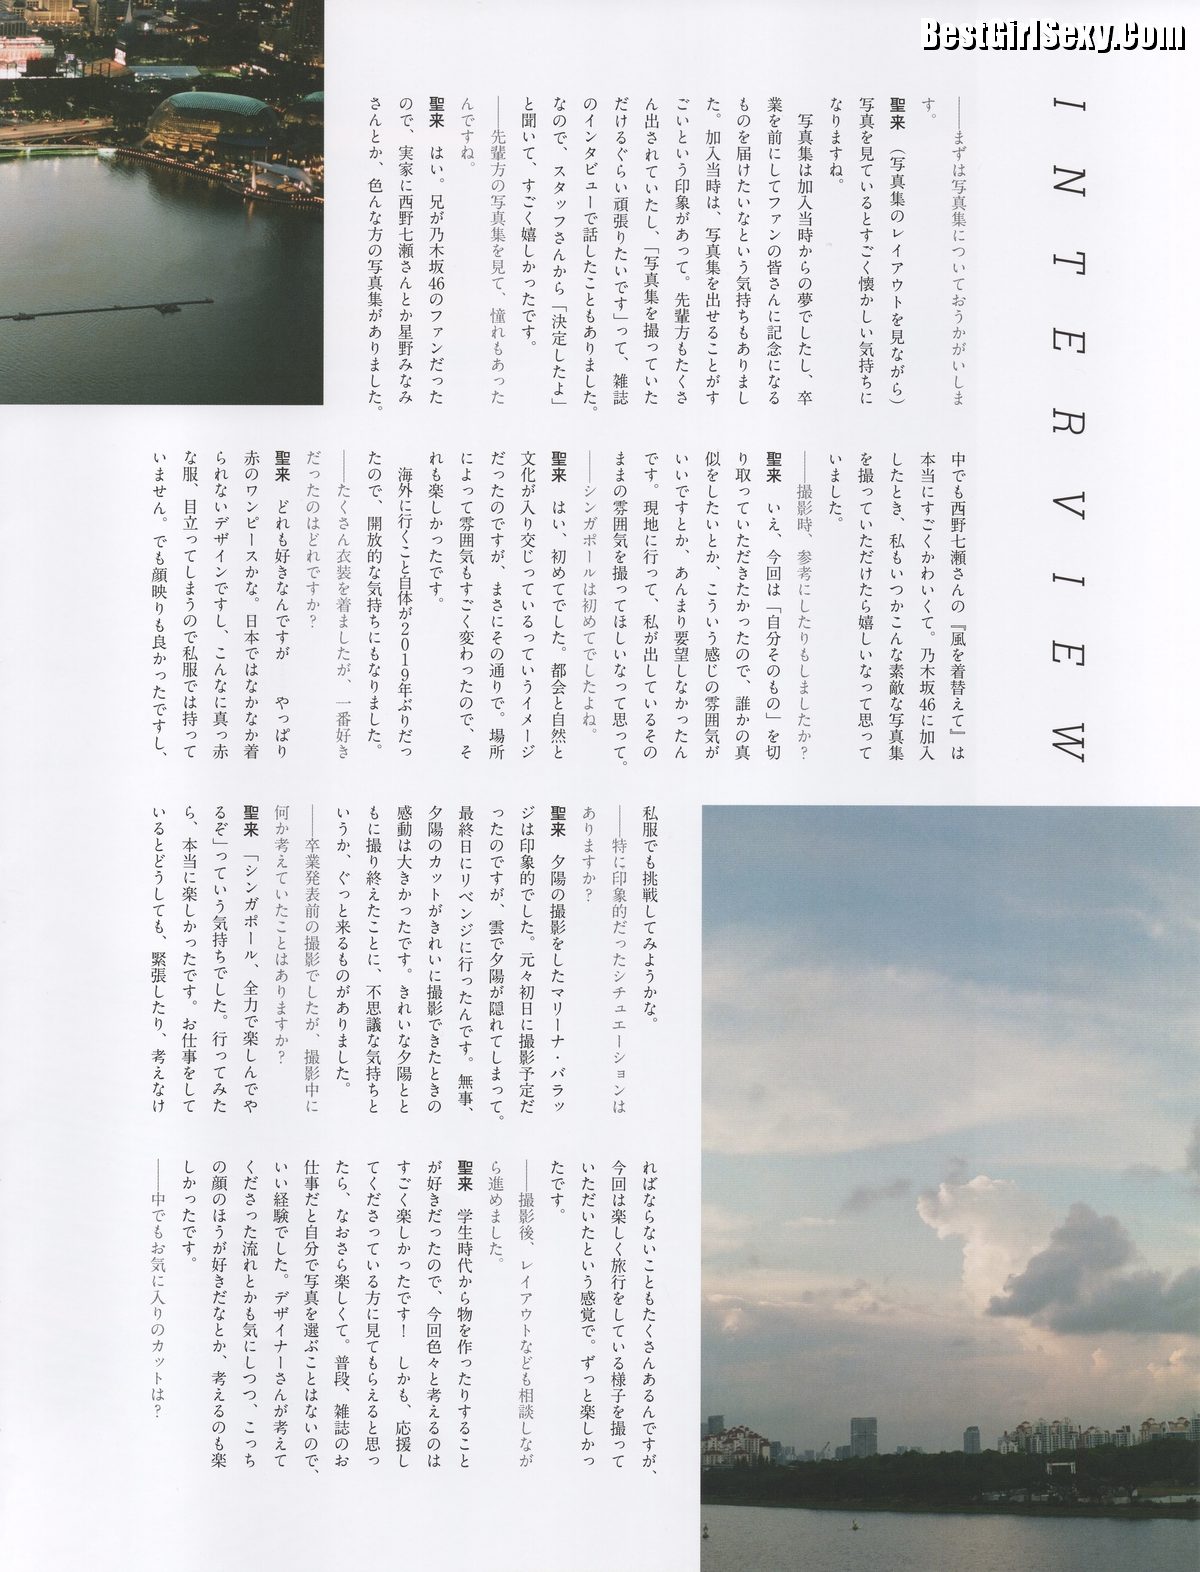 Graduation-Commemorative-Photobook-Seira-Hayakawa-早川聖来-See-You-Someday-B-0056-7283091979.jpg